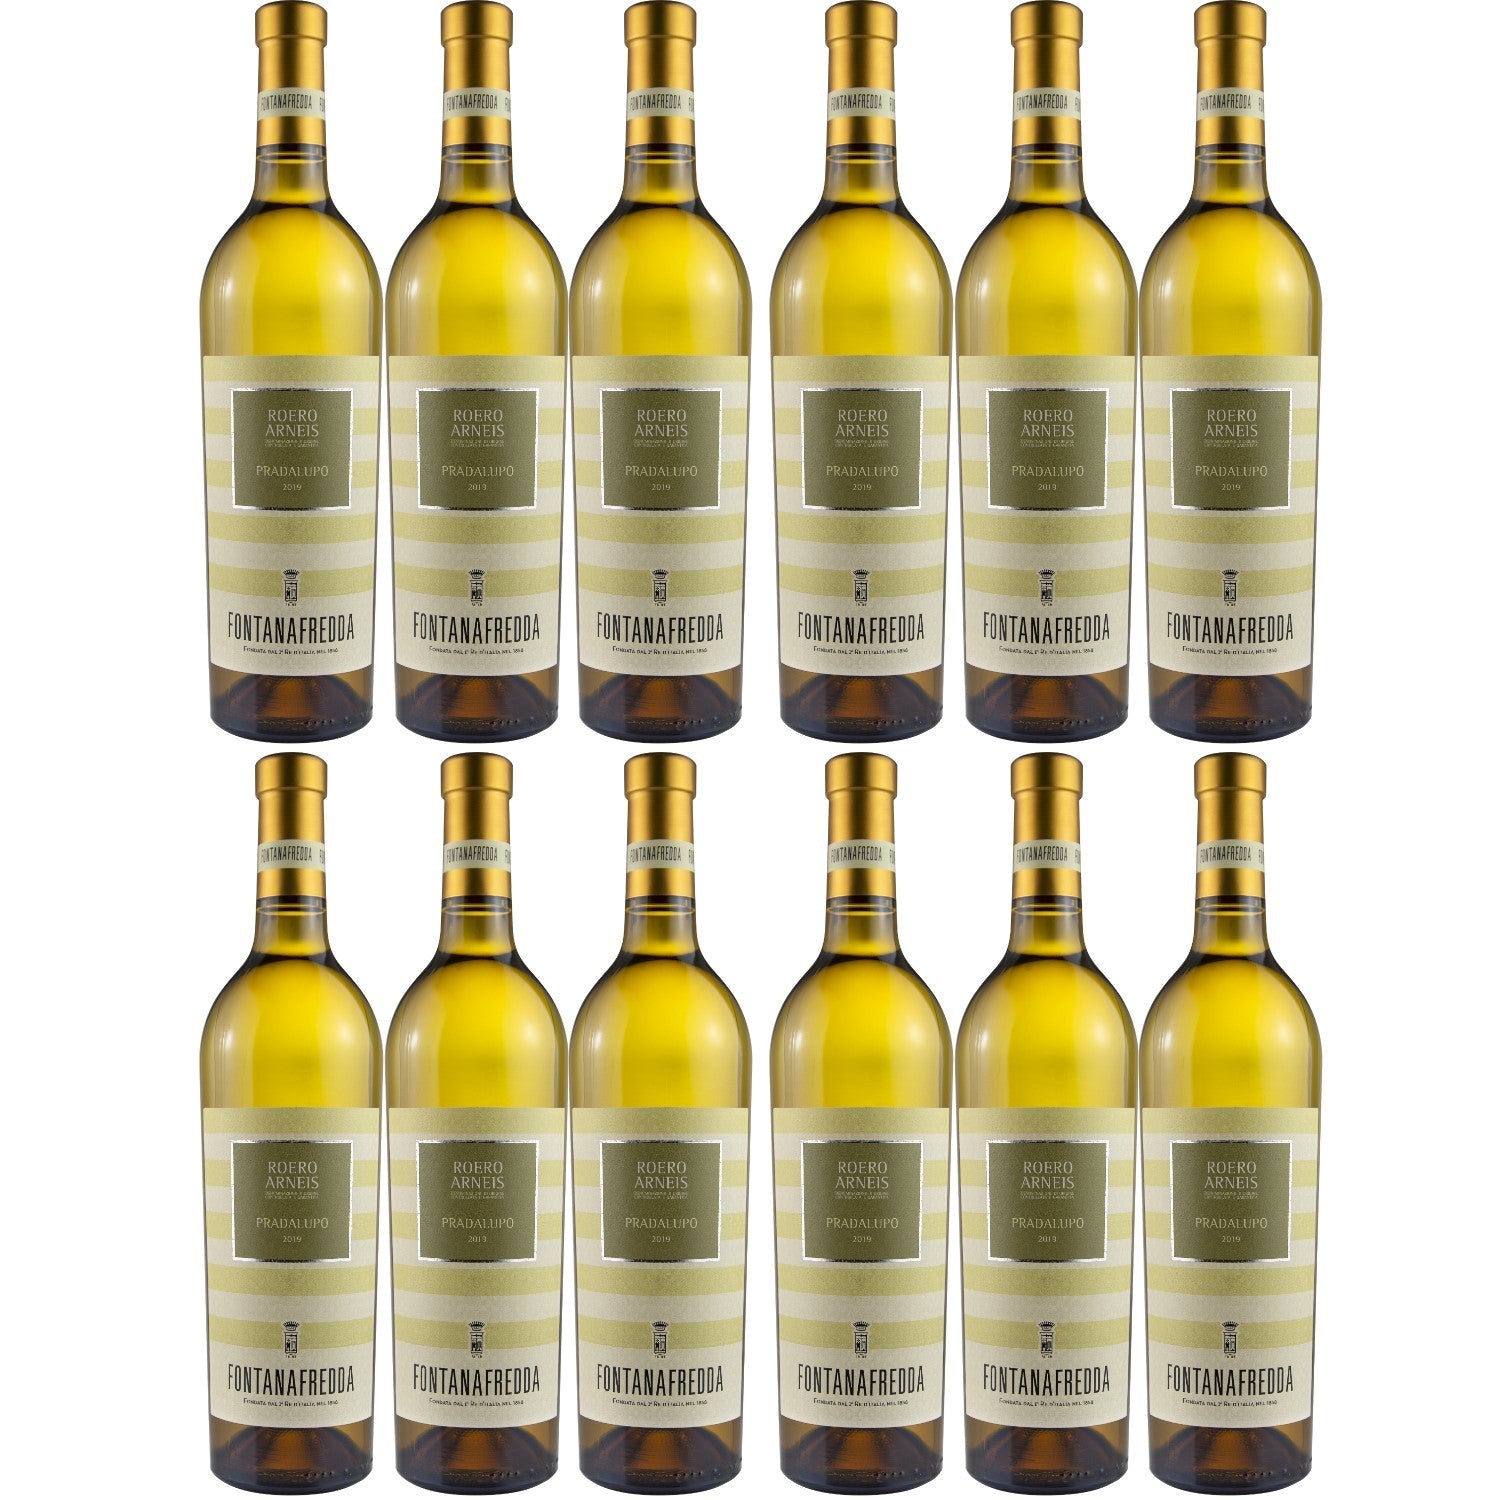 Fontanafredda Pradalupo Roero Arneis DOCG Weißwein Wein trocken Italien (12 x 0.75l) - Versanel -